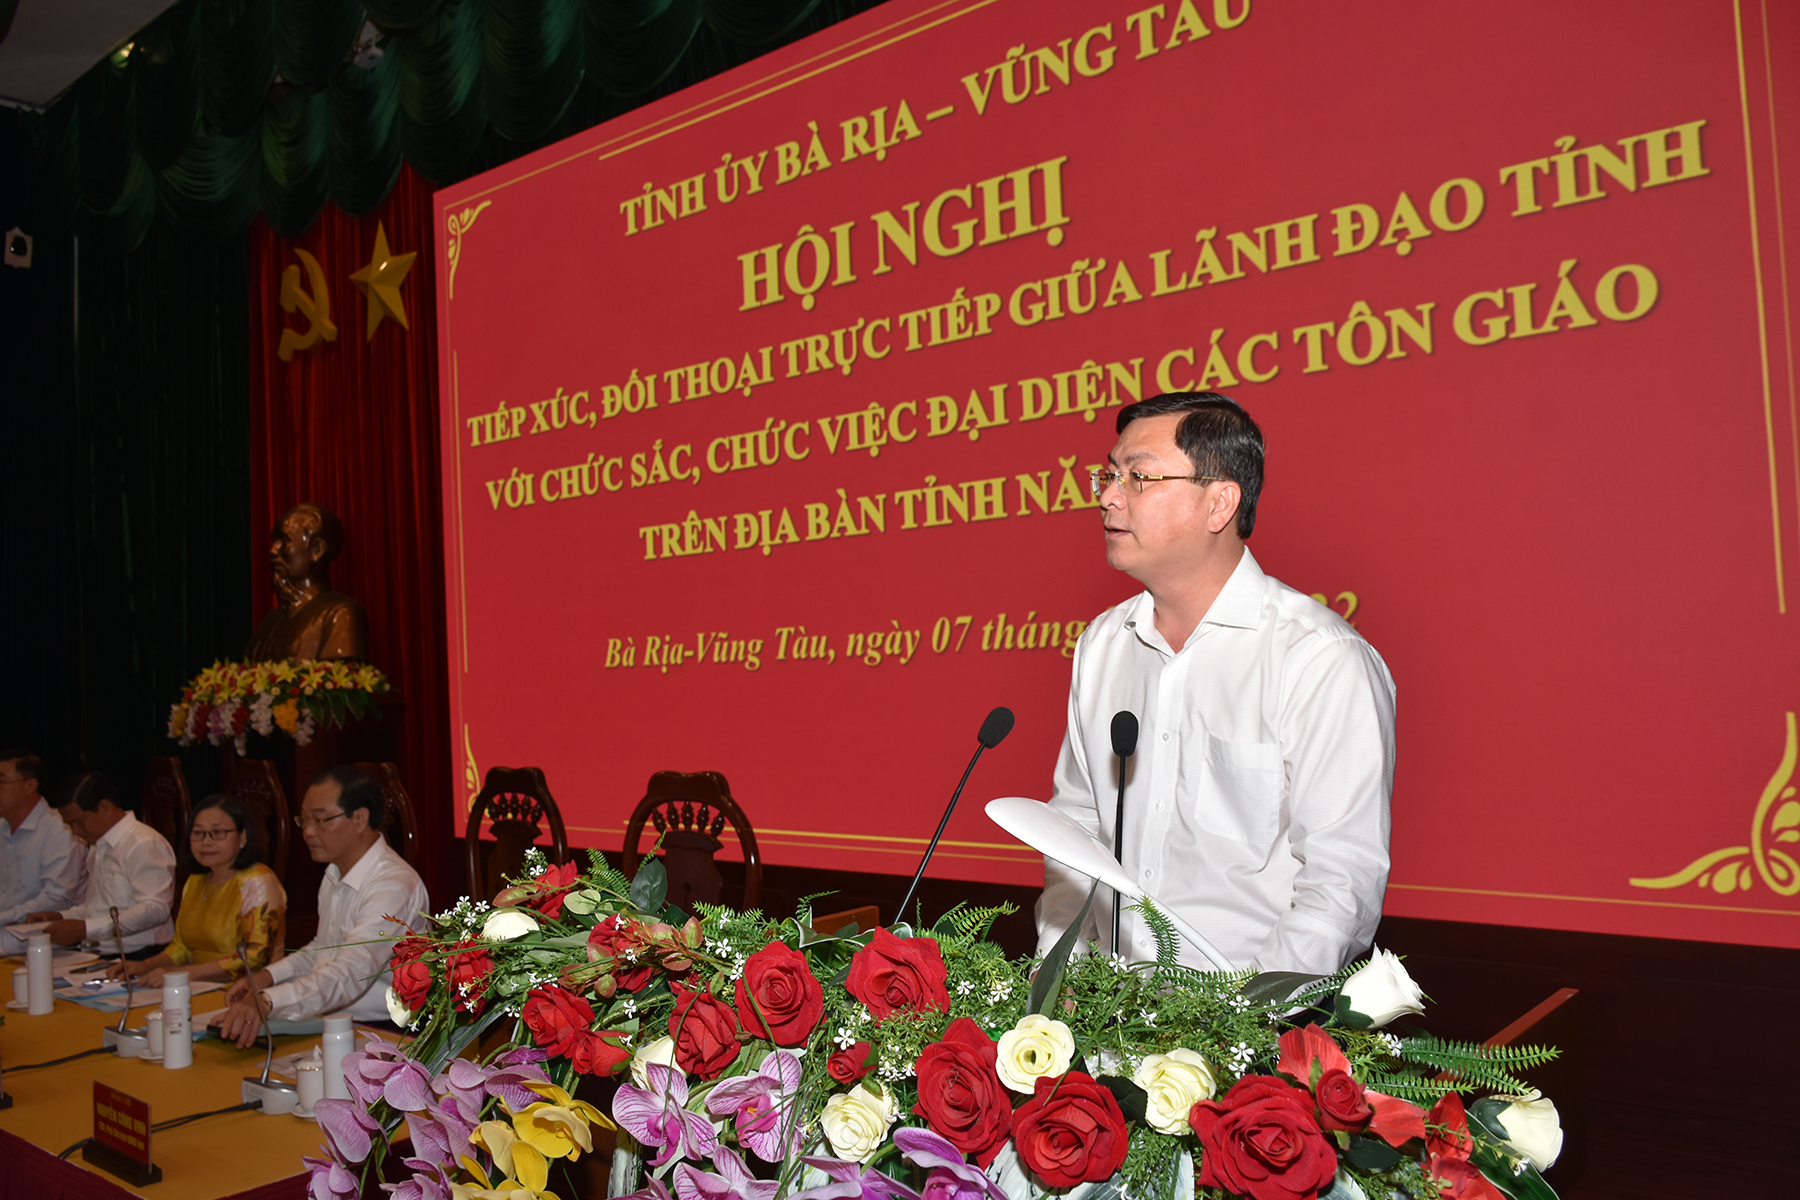 Ông Nguyễn Công Vinh, Phó Chủ tịch UBND tỉnh thông tin về tình hình kinh tế, xã hội, an ninh, quốc phòng và công tác tôn giáo 7 tháng đầu năm 2022.